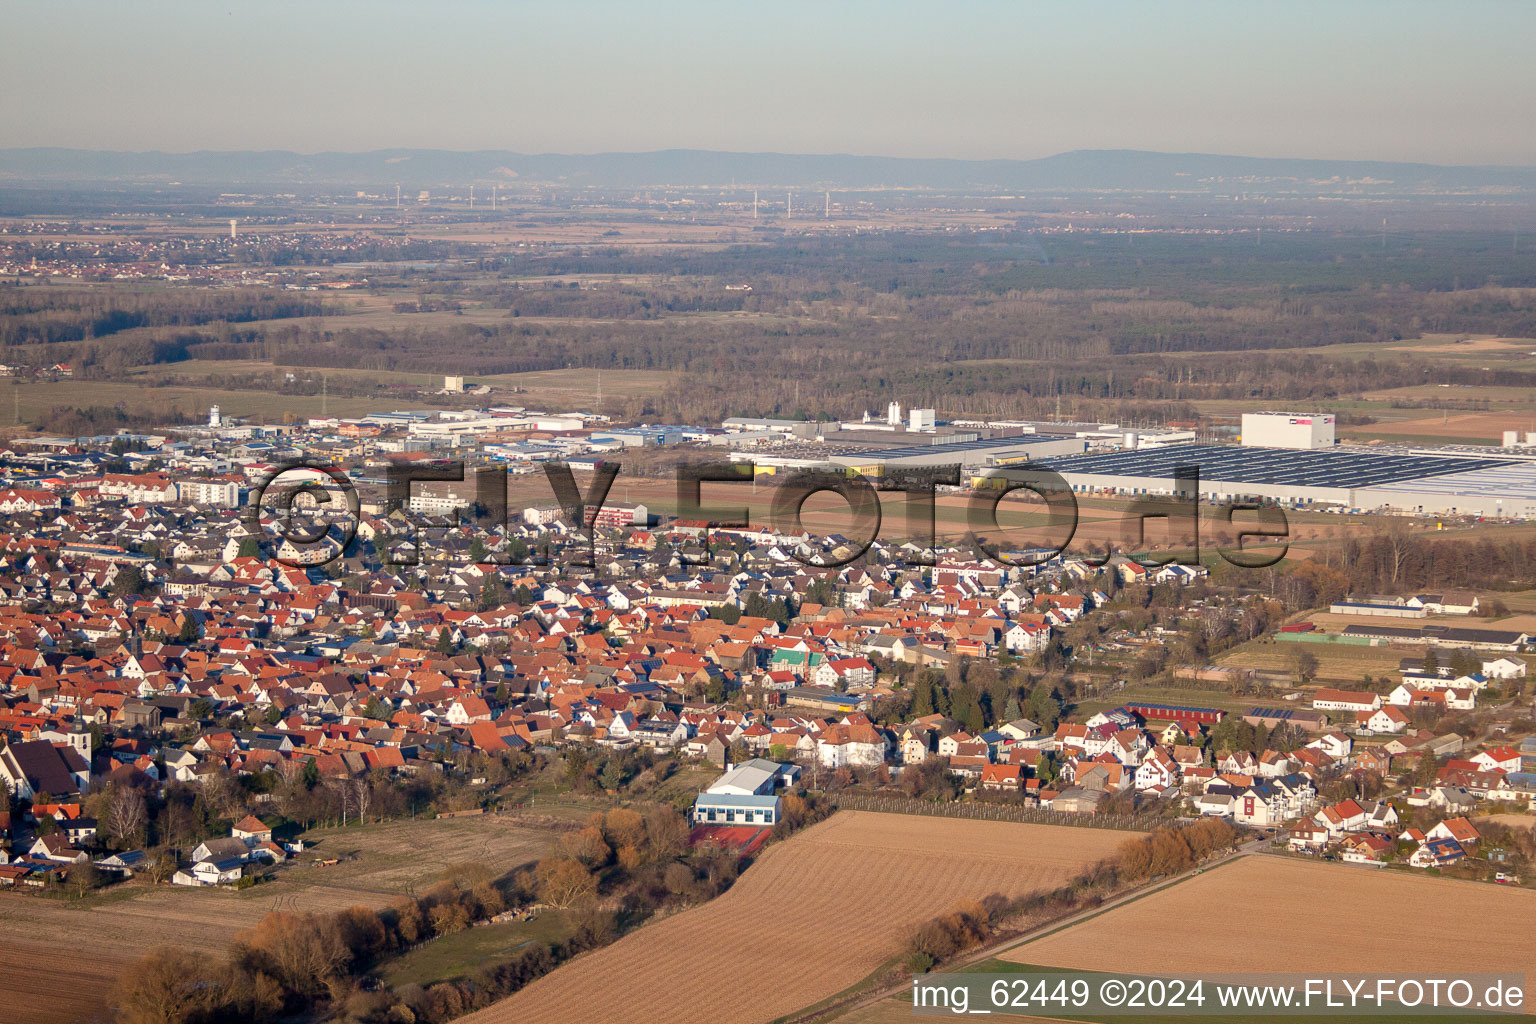 Offenbach an der Queich dans le département Rhénanie-Palatinat, Allemagne depuis l'avion